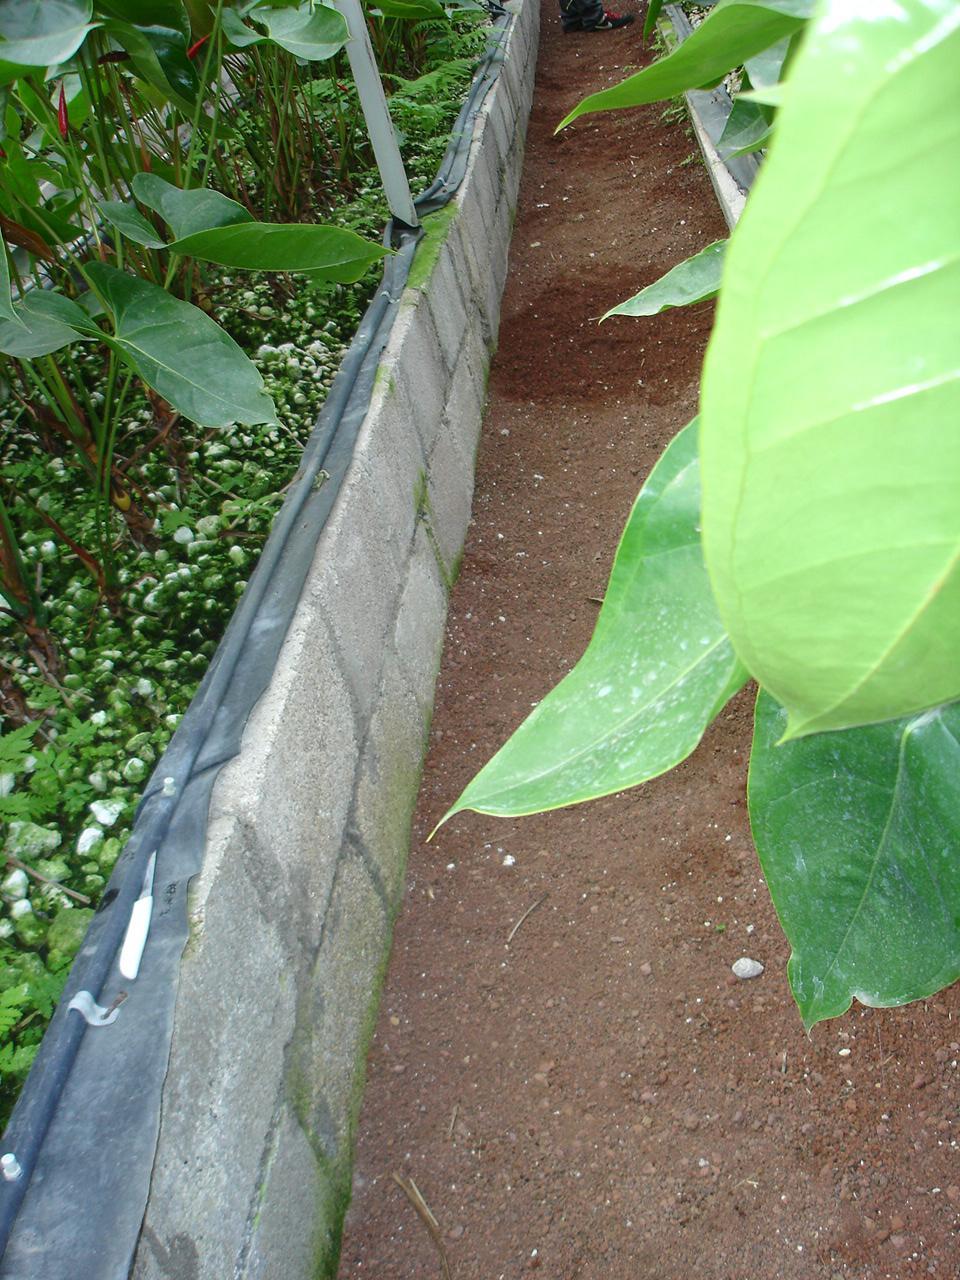 Profundidad de plantación de 12 a 17 cm Mayor profundidad produce plantas muy